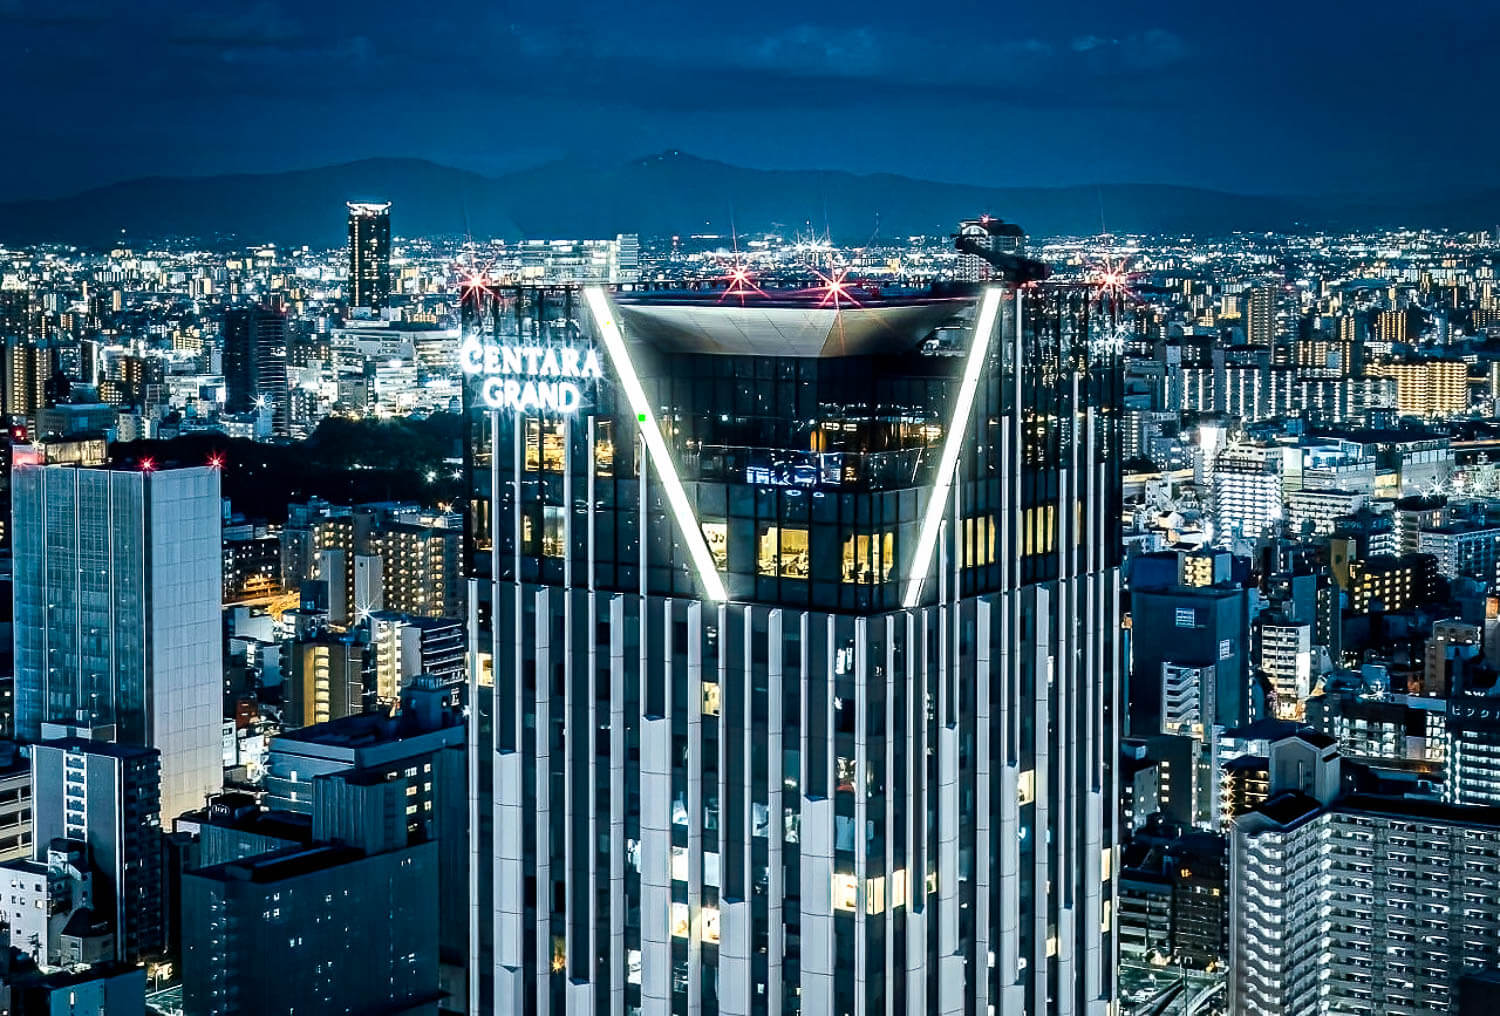 Centara Grand Hotel in Osaka